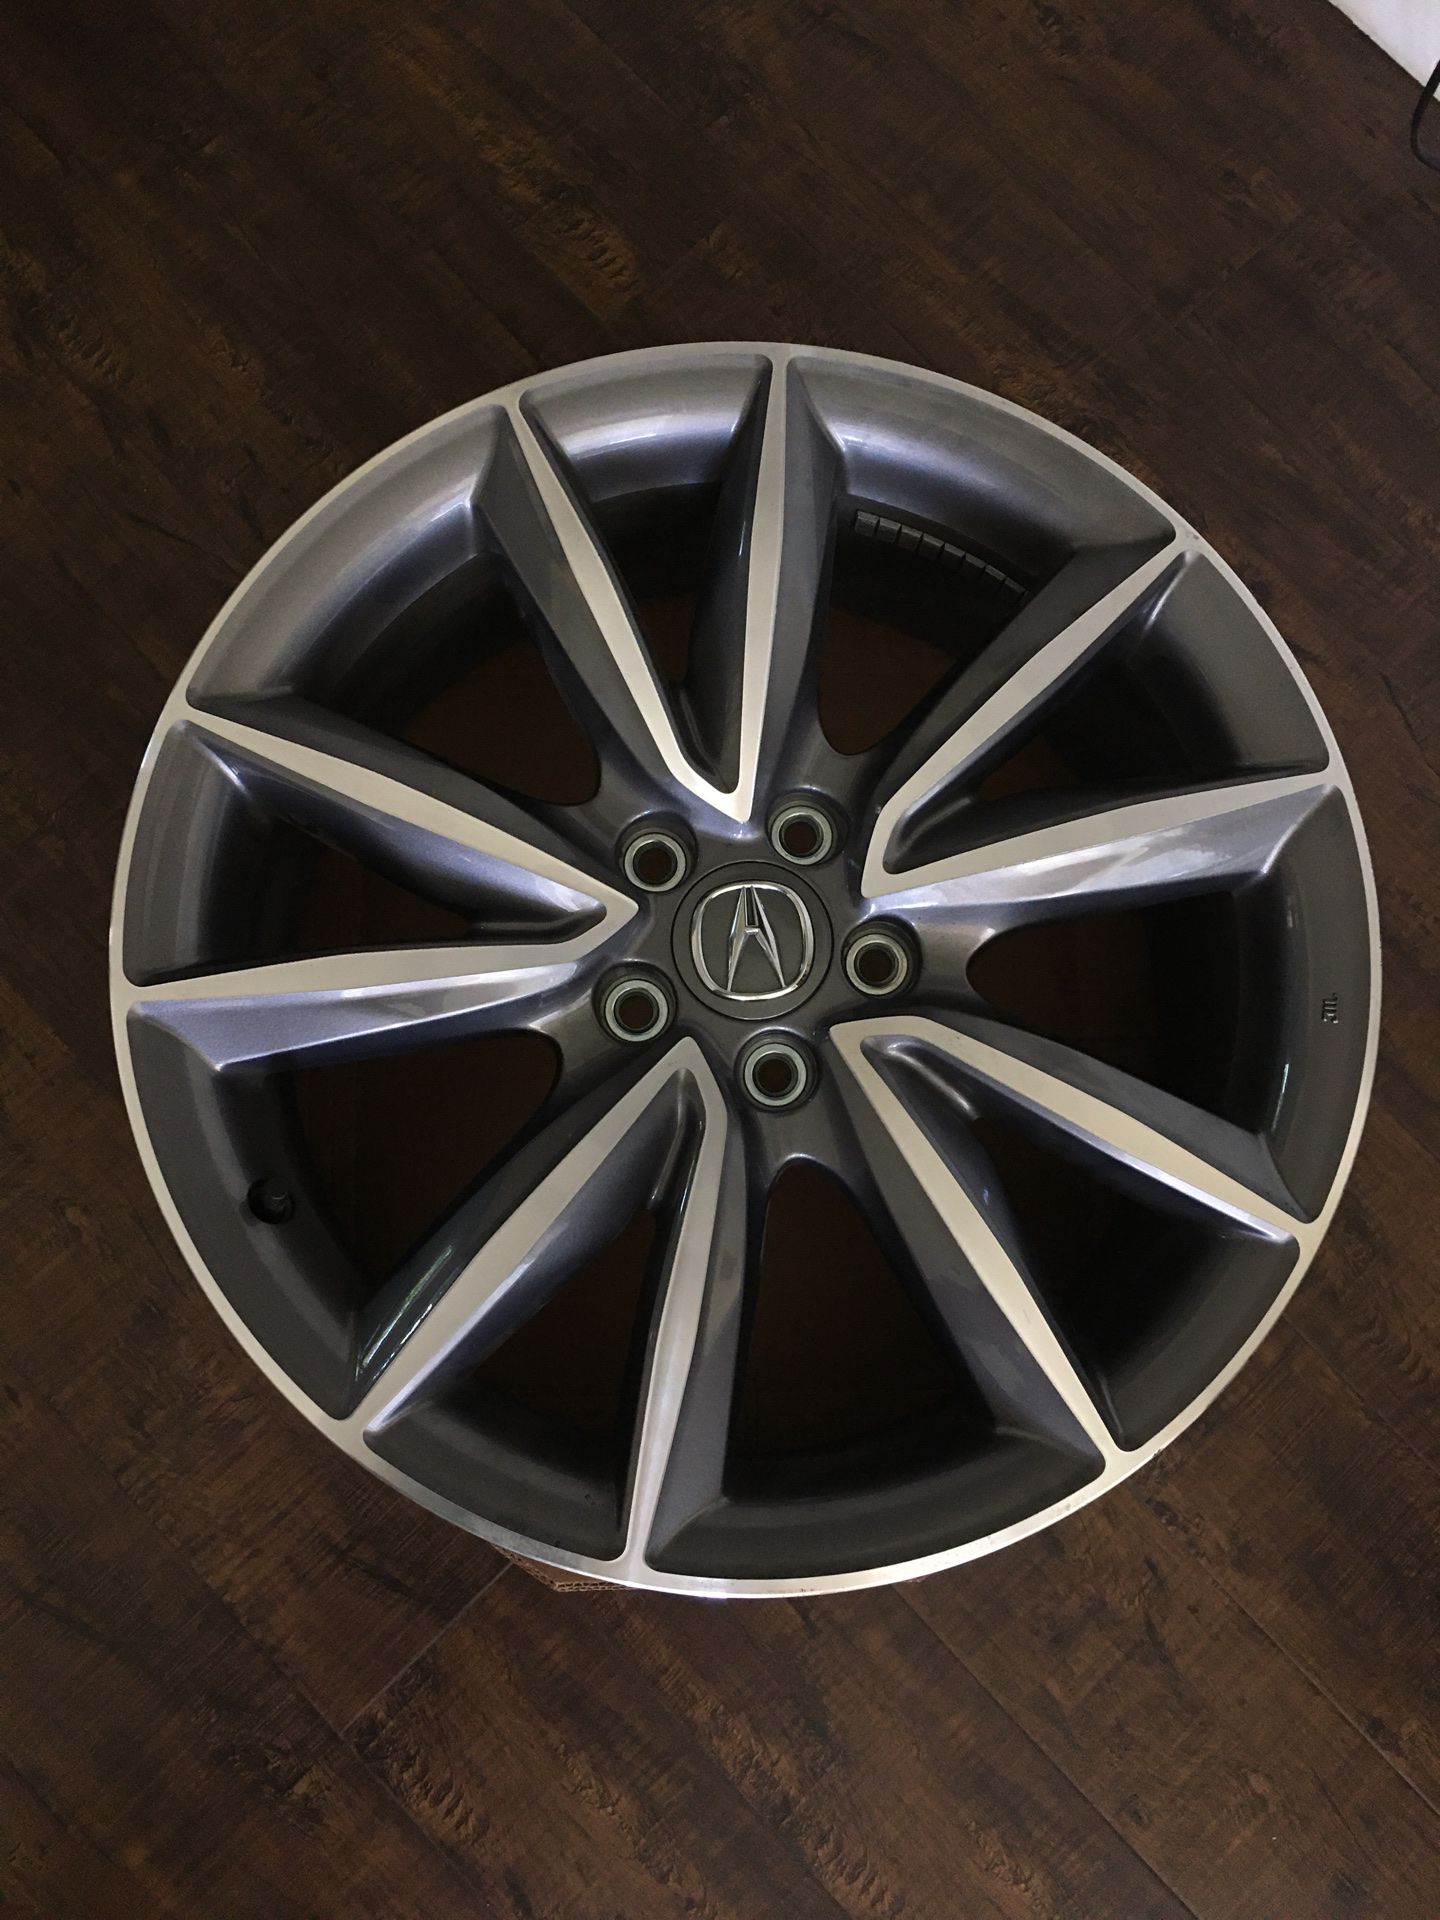 19”inch Acura Honda Alloy Wheels/ Rims Full Set 2021 RDX SUV